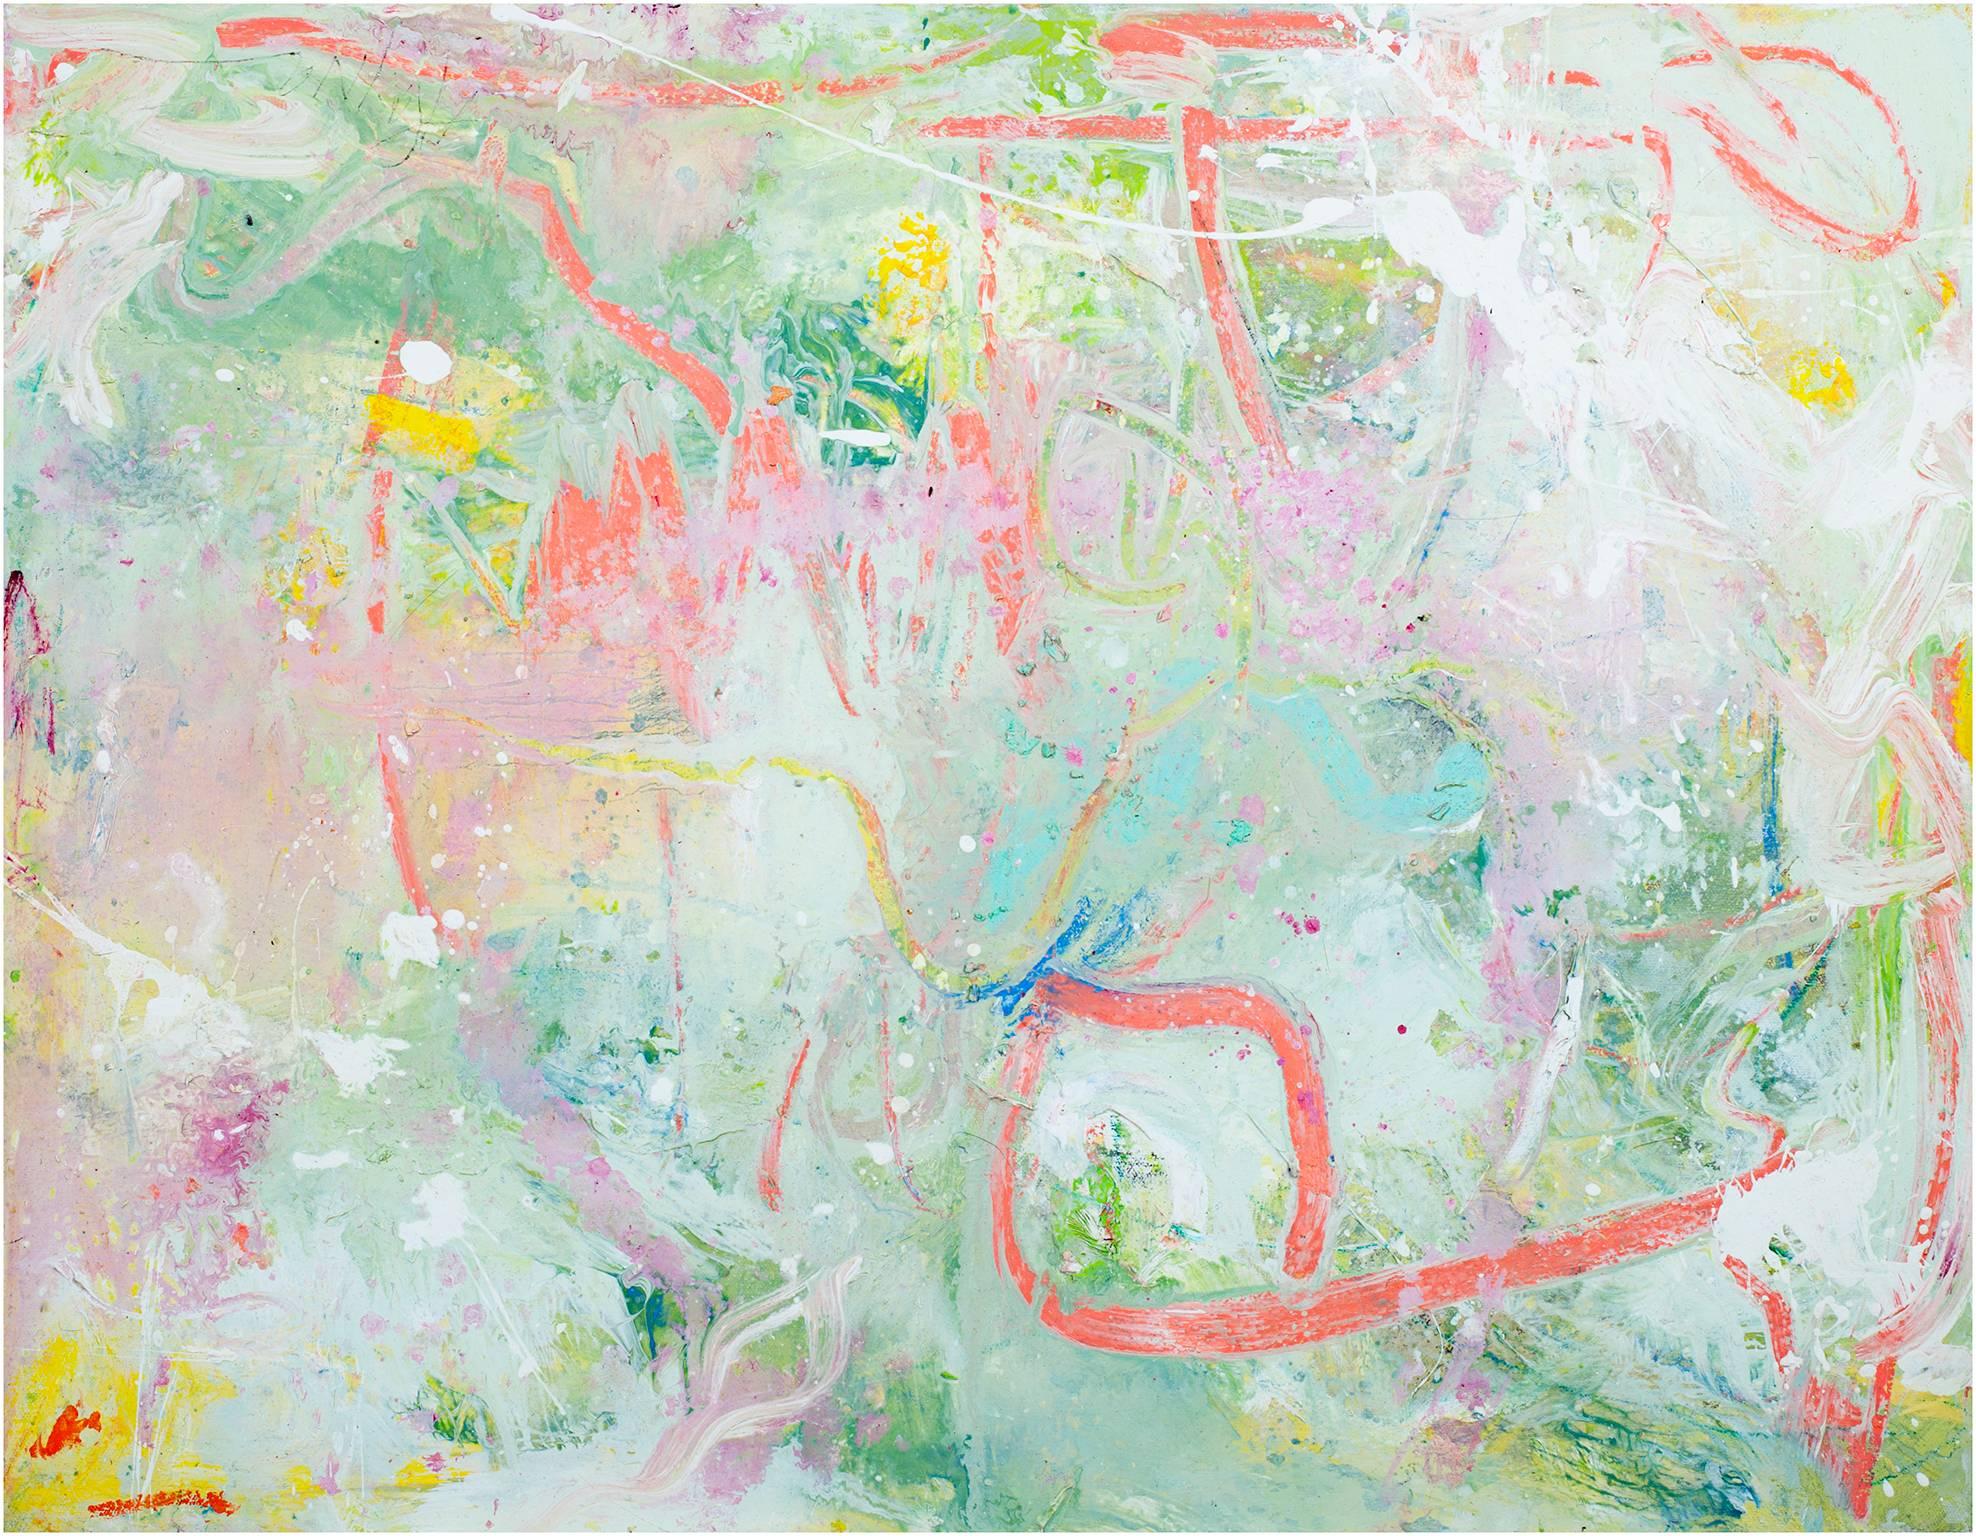 "Into the Sun II" est une peinture à l'huile originale sur toile d'Alayna Rose. Il présente une variété de marques abstraites dans des couleurs pâles. Les marques roses expressives semblent nager dans les bleus et verts froids de